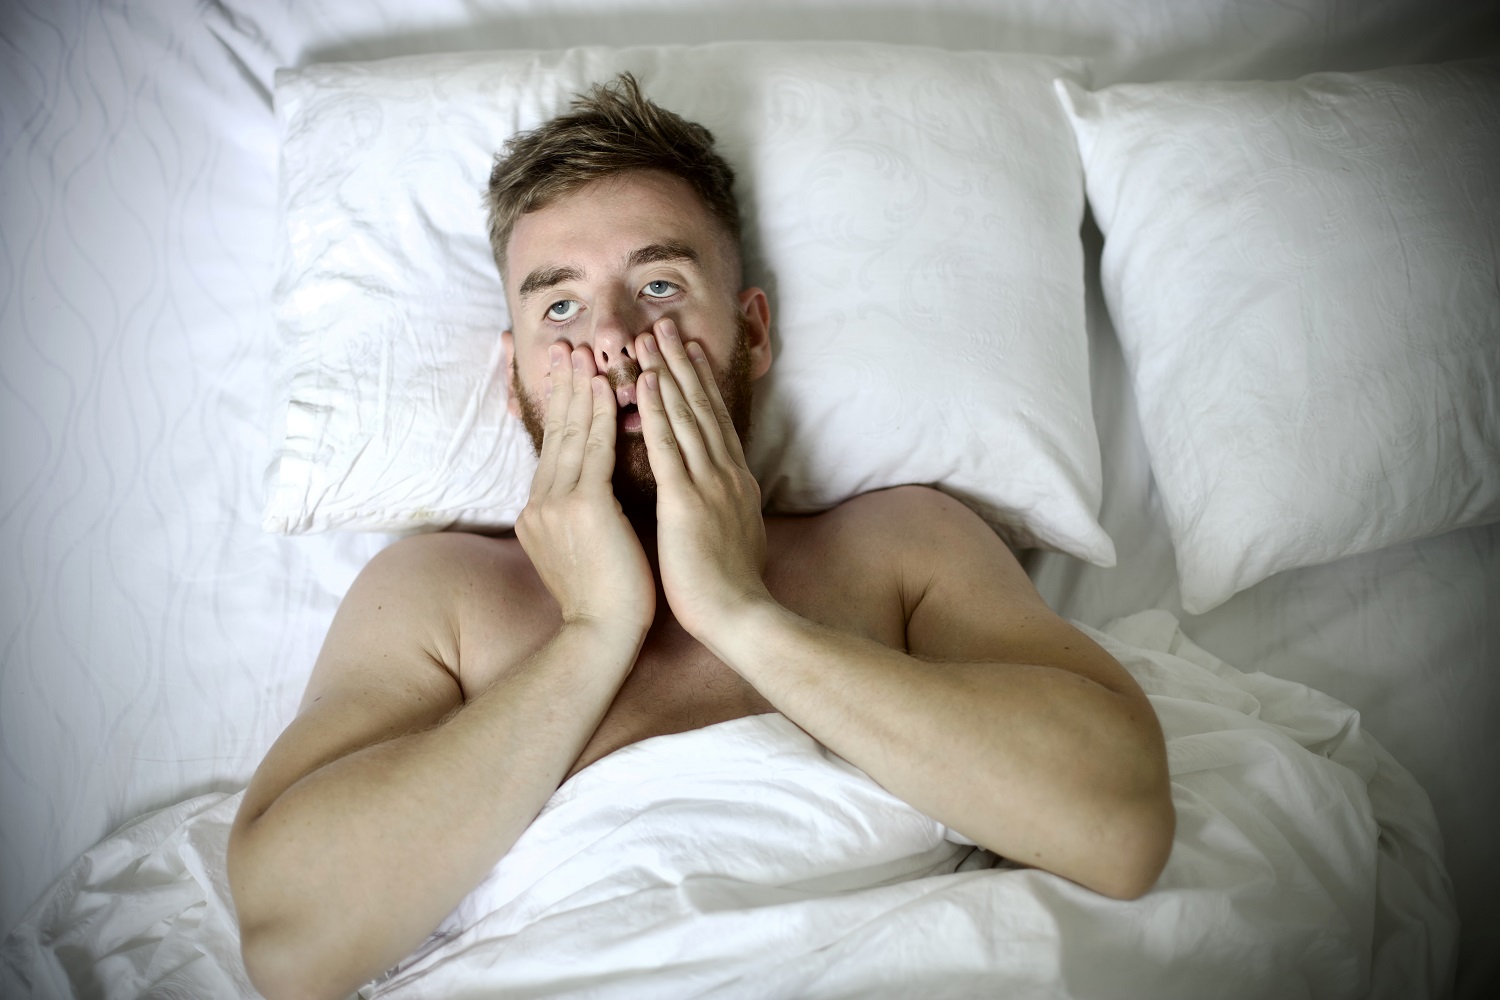 Młody mężczyzna w łóżku, obejmuje twarz dłońmi, smutny lub zmartwiony